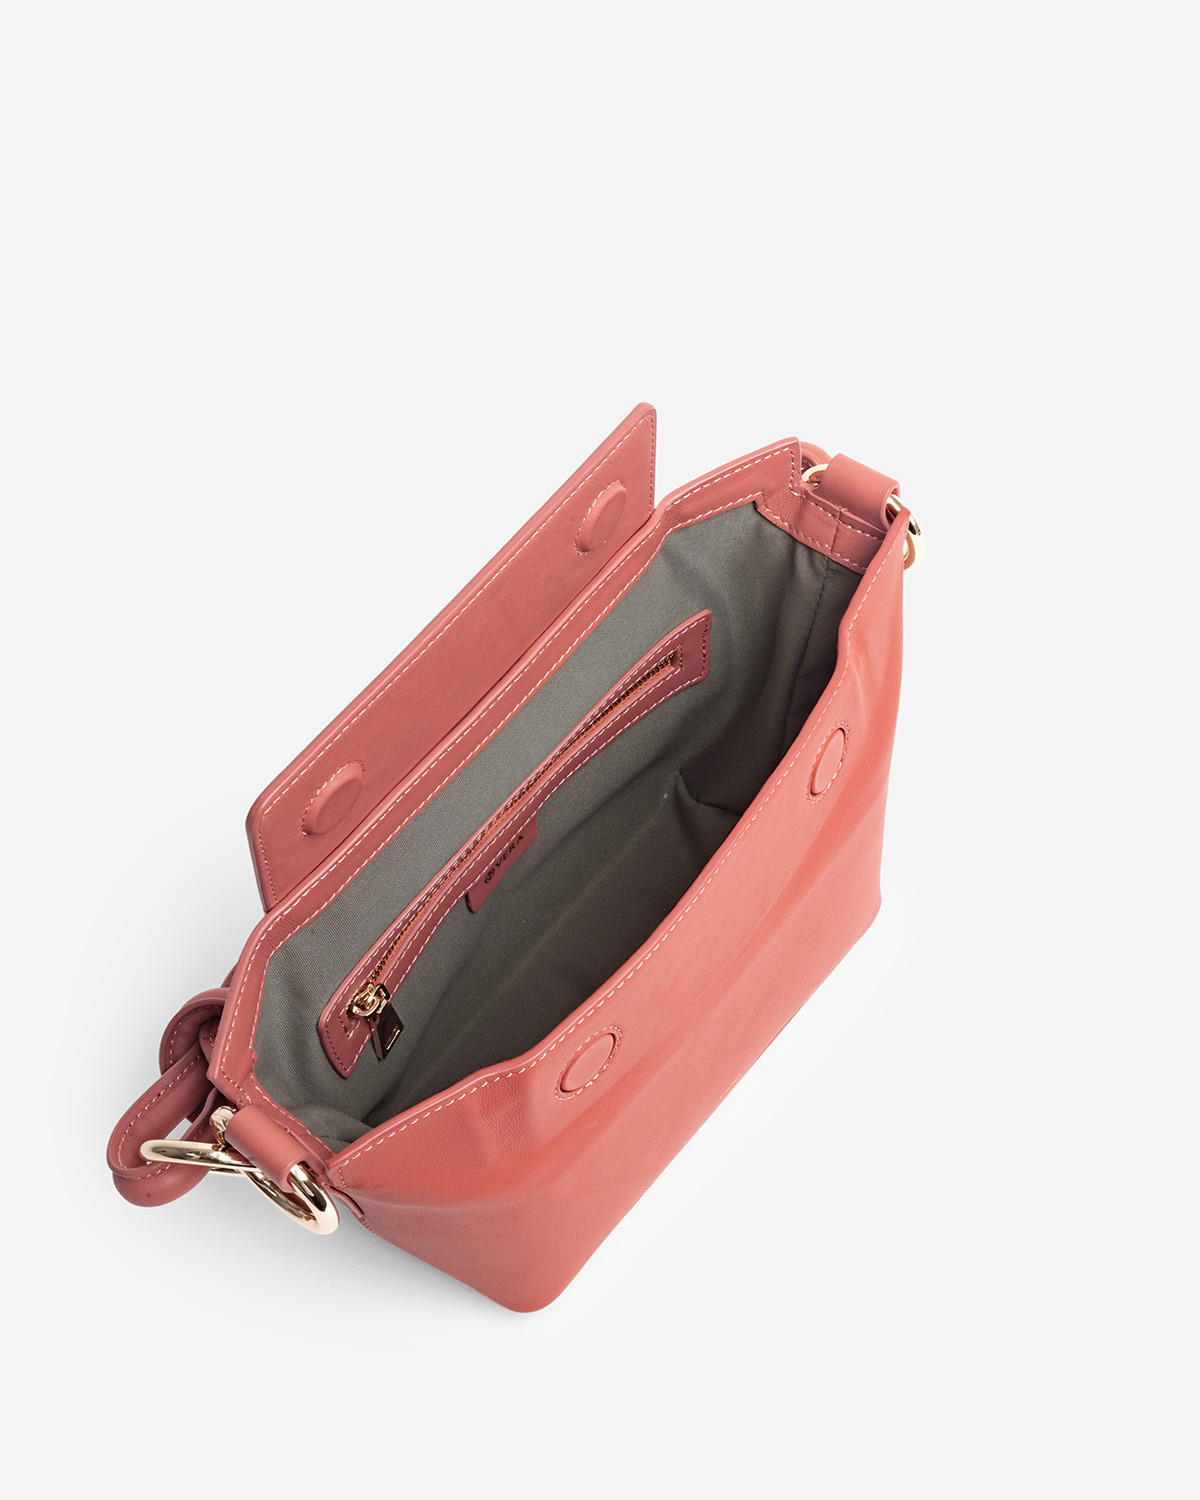 กระเป๋าคล้องไหล่และสะพายข้างหนังแท้ VERA COCO box Leather Shoulder and Crossbody Bag สี Brandy Apricot